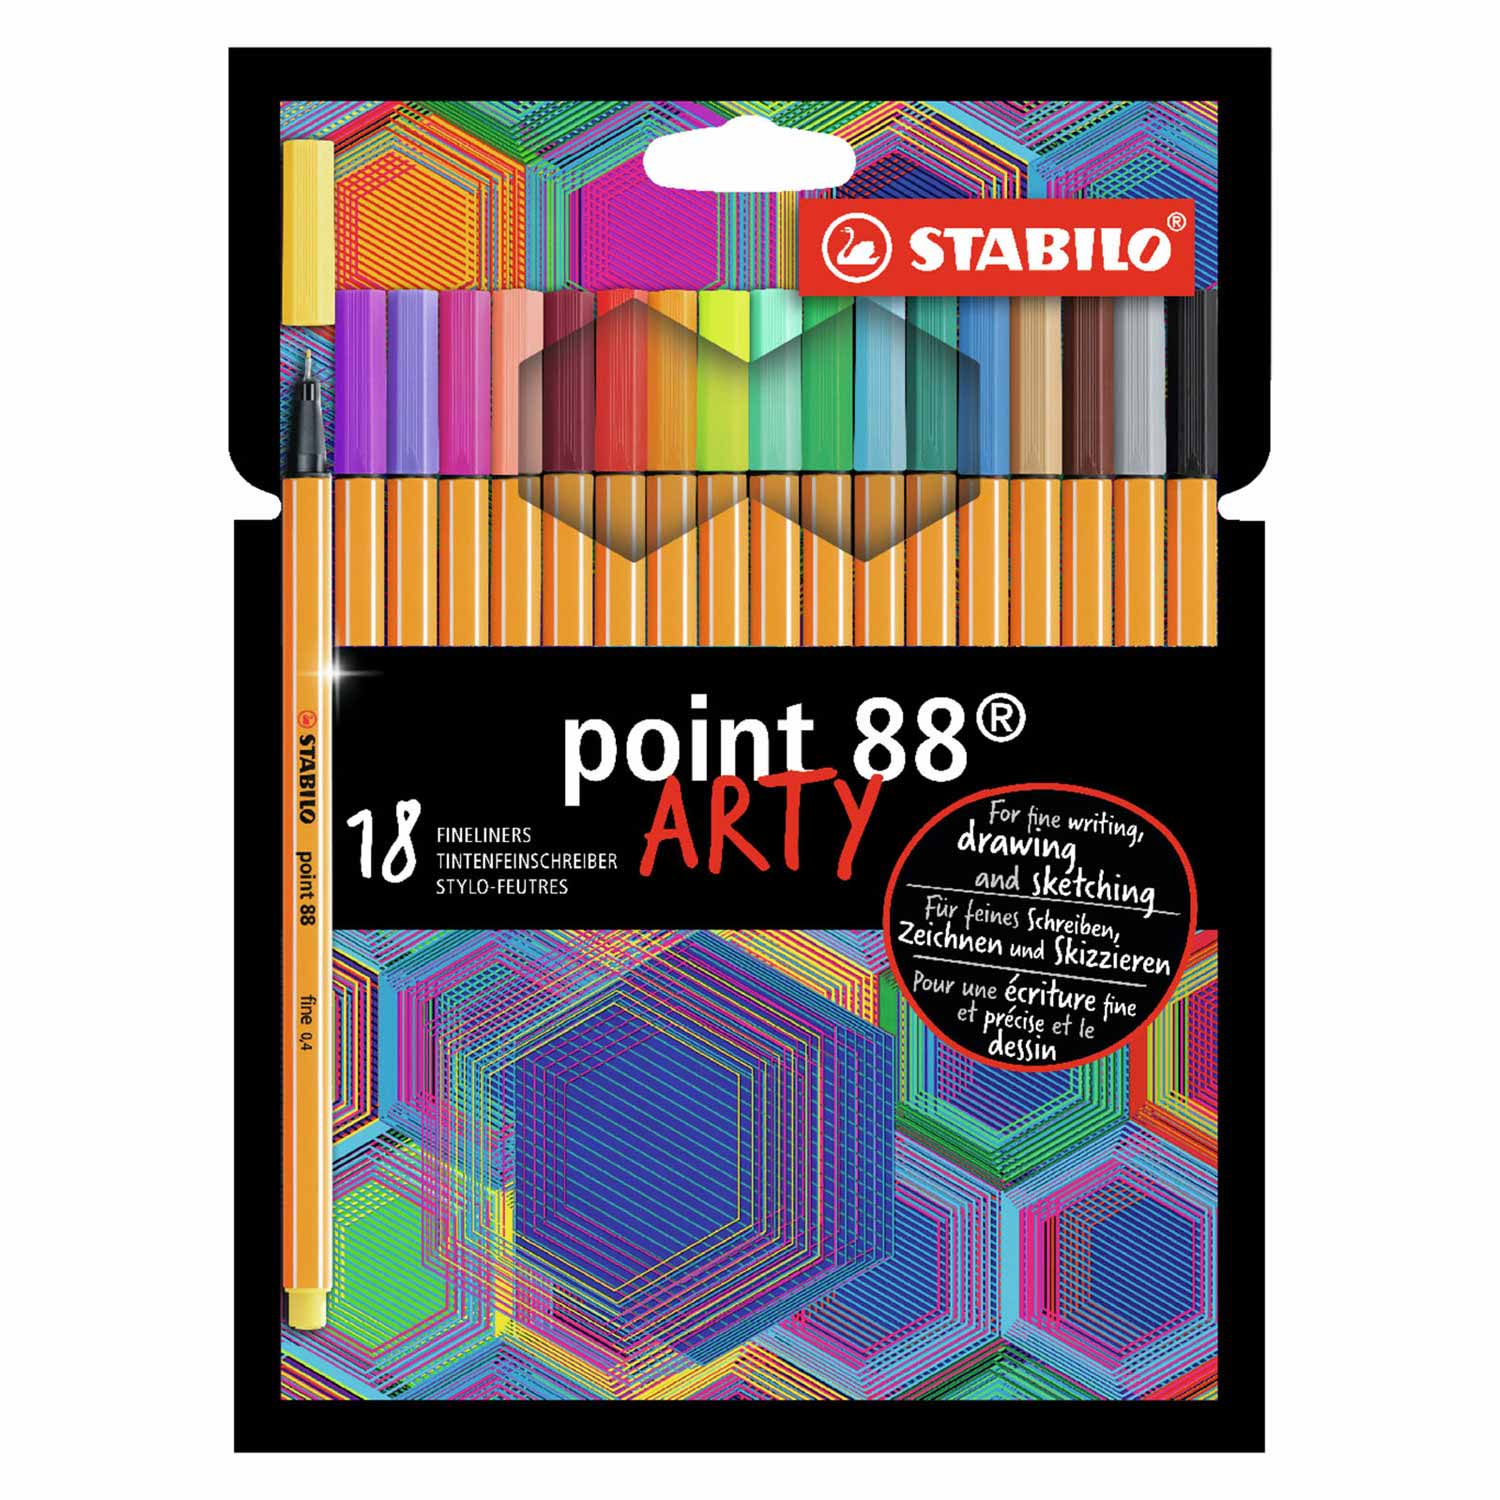 STABILO point 88 - Fineliner - ARTY - Coffret de 18 pièces